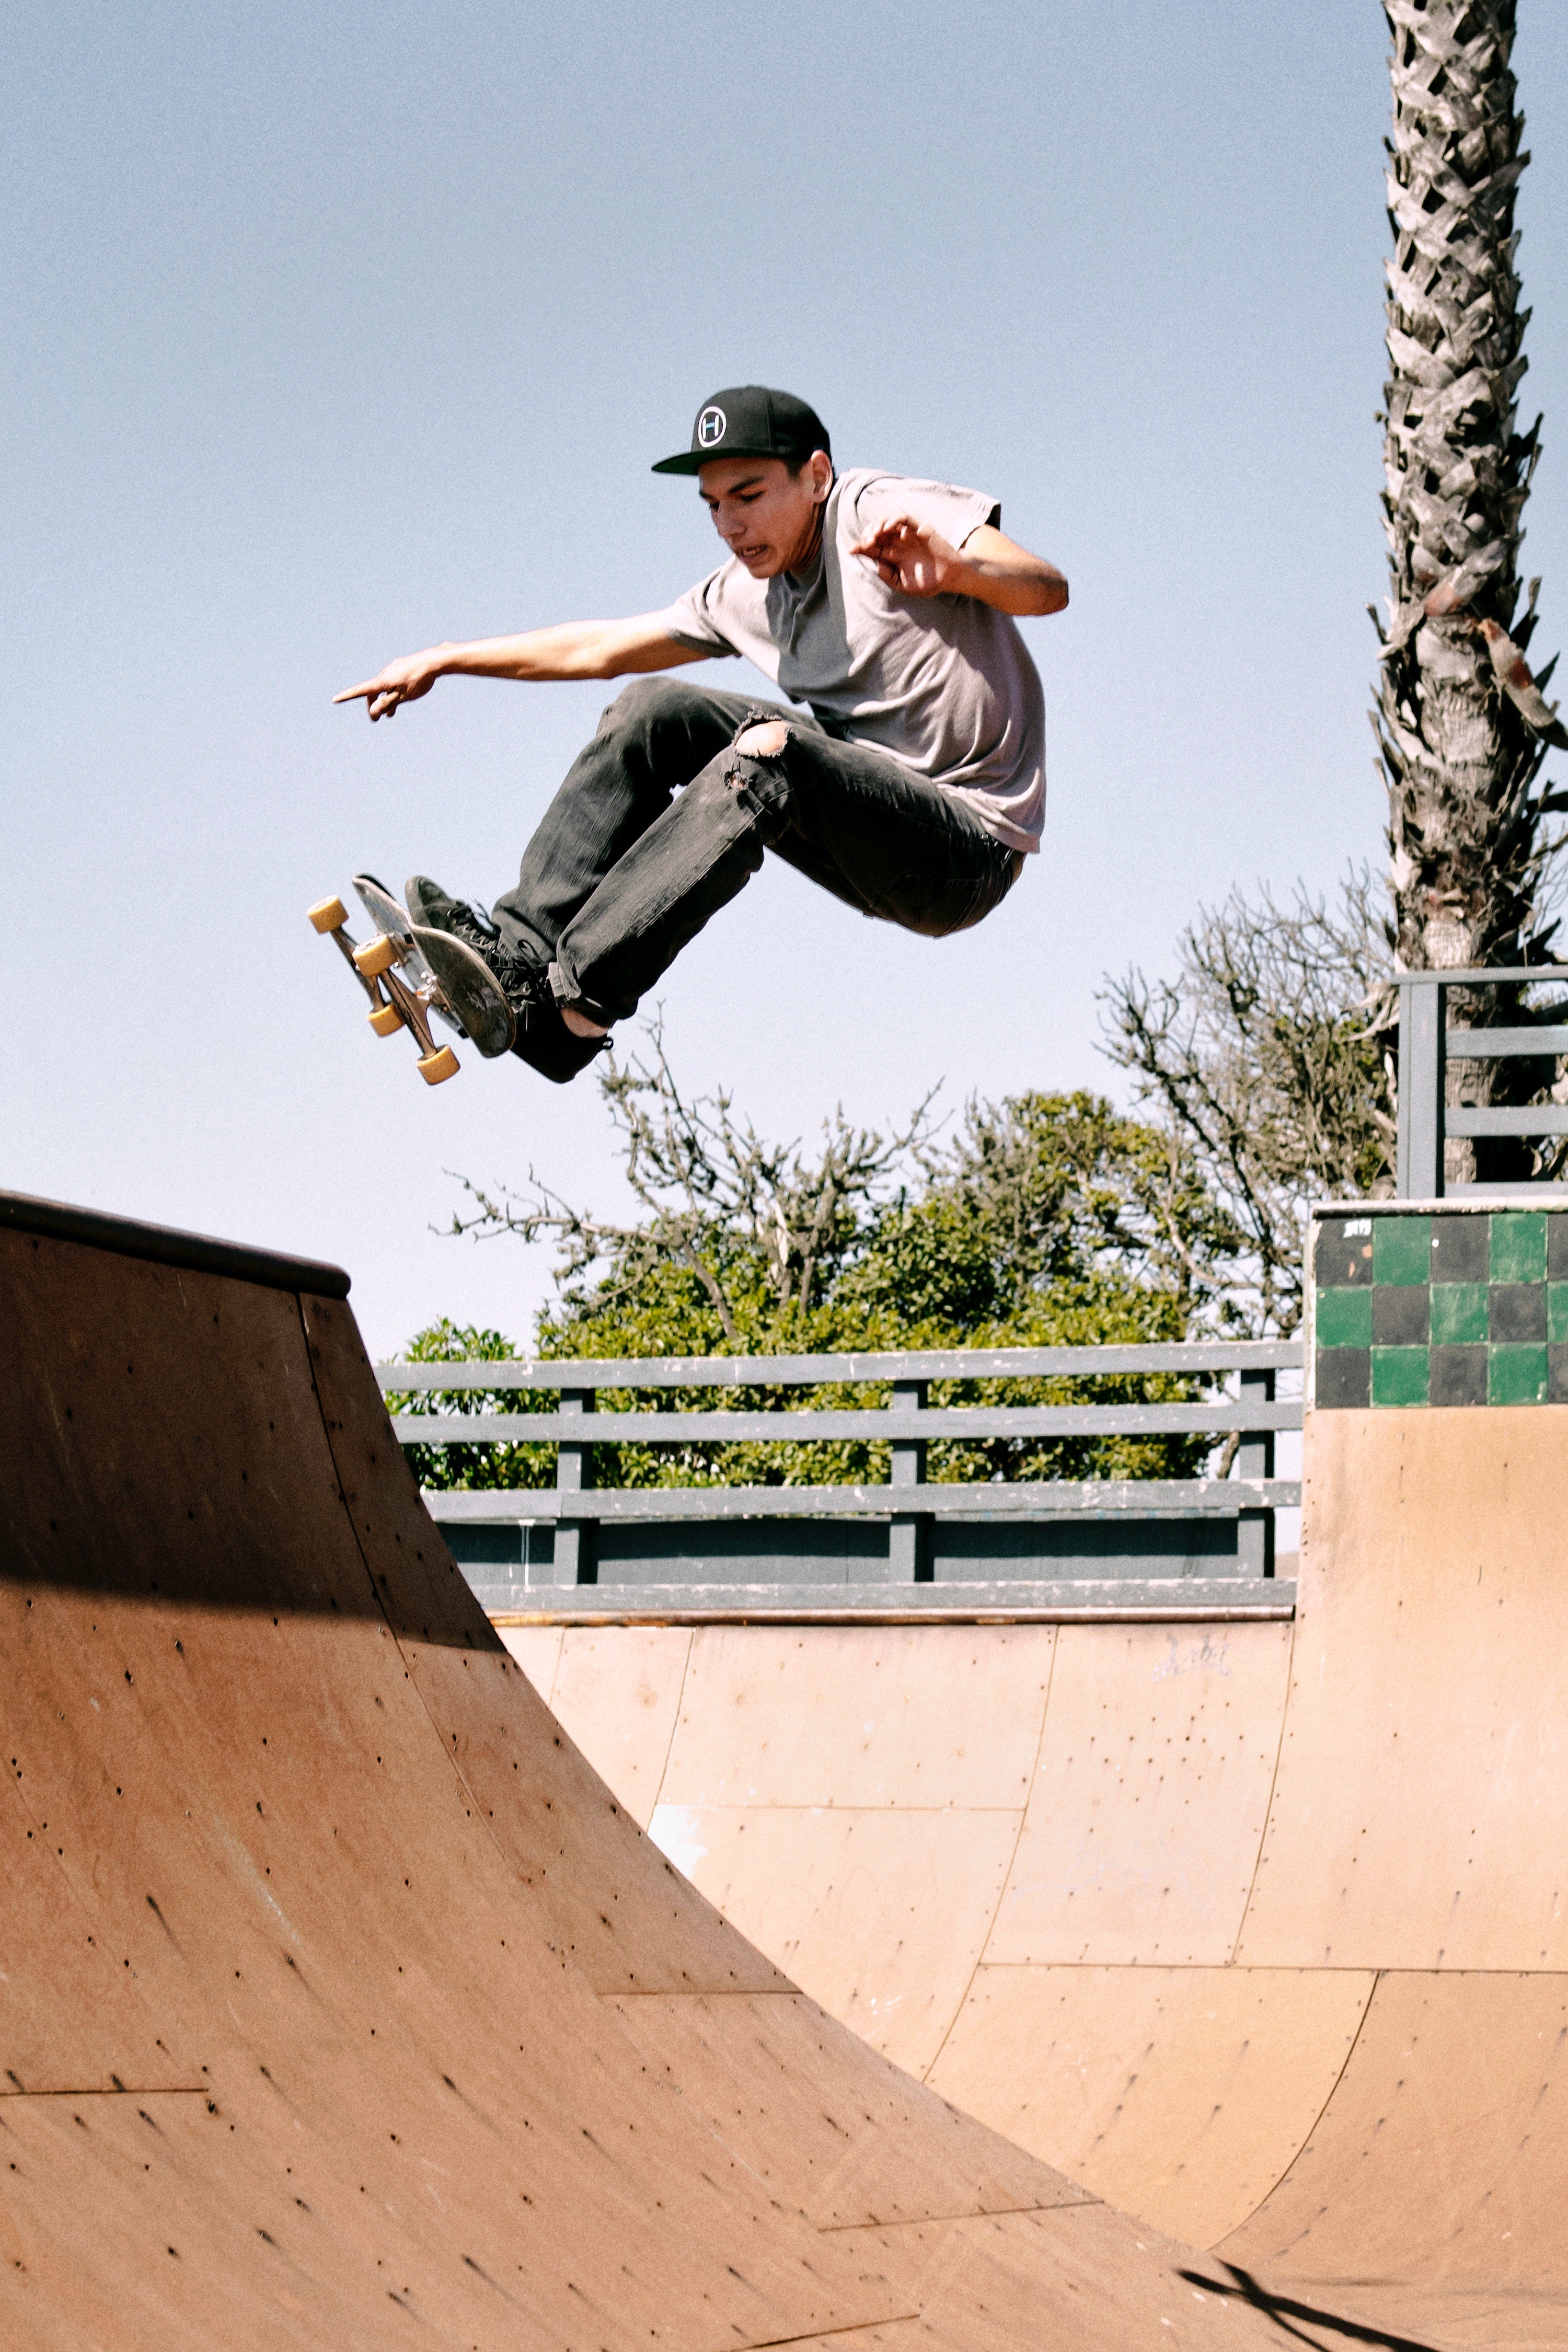 Skateboarder On Vert Ramp